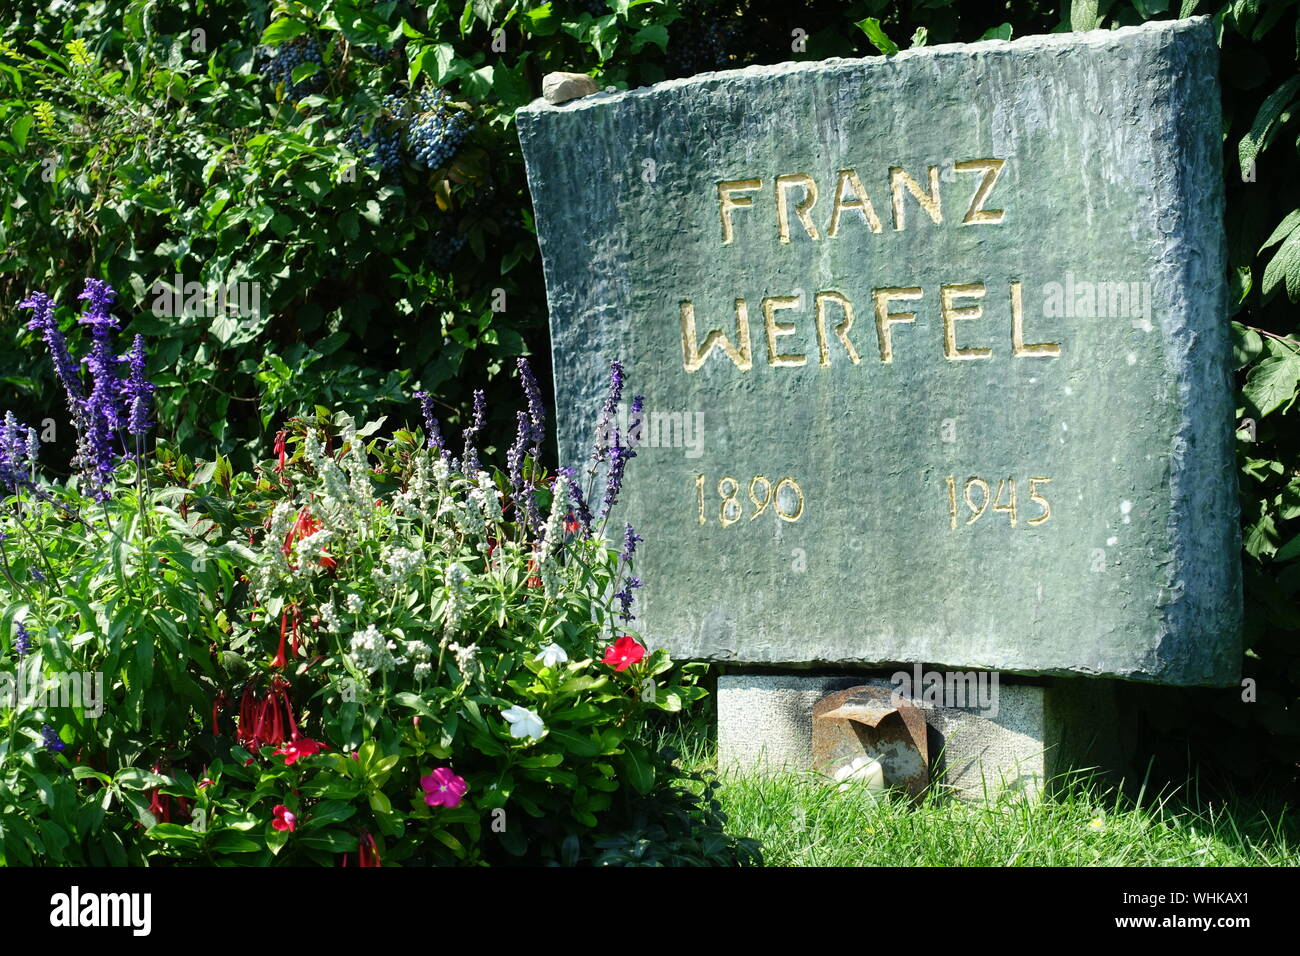 Franz Viktor Werfel war ein österreichischer Schriftsteller jüdisch-deutschböhmischer Herkunft. Er ging aufgrund der nationalsozialistischen Herrschaf Stock Photo